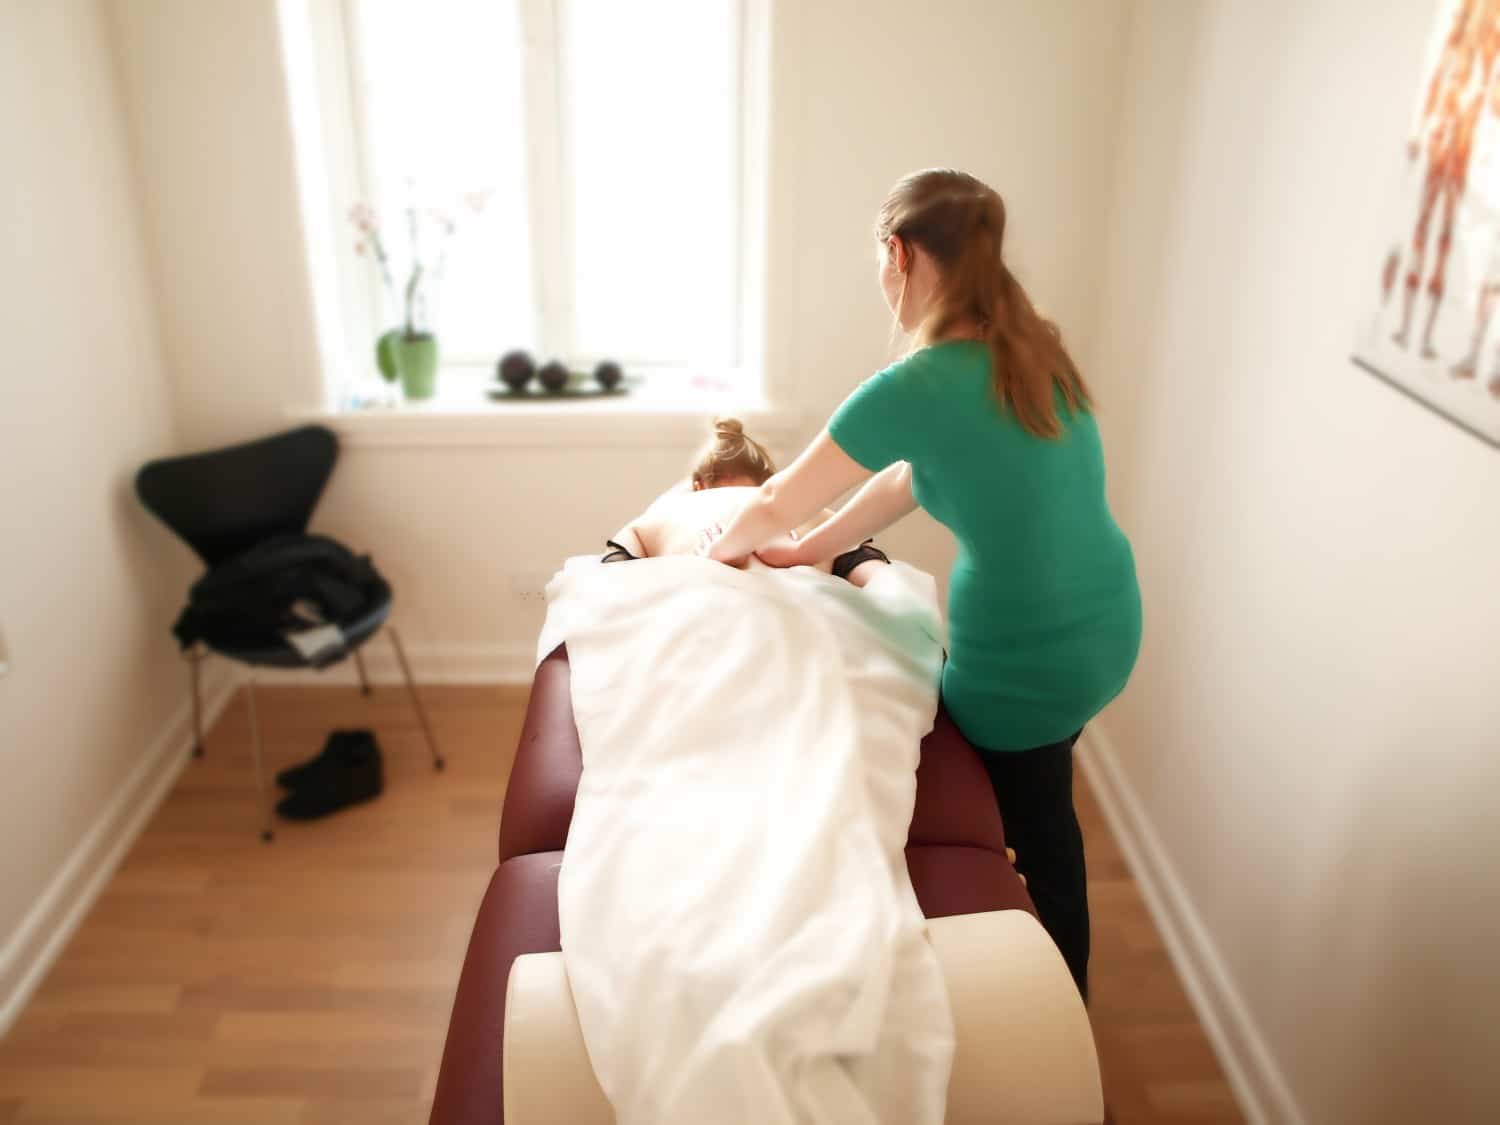 massagen og fysioterapi udføres korrekt for at hjælpe mod smerter og opnå mere velvære